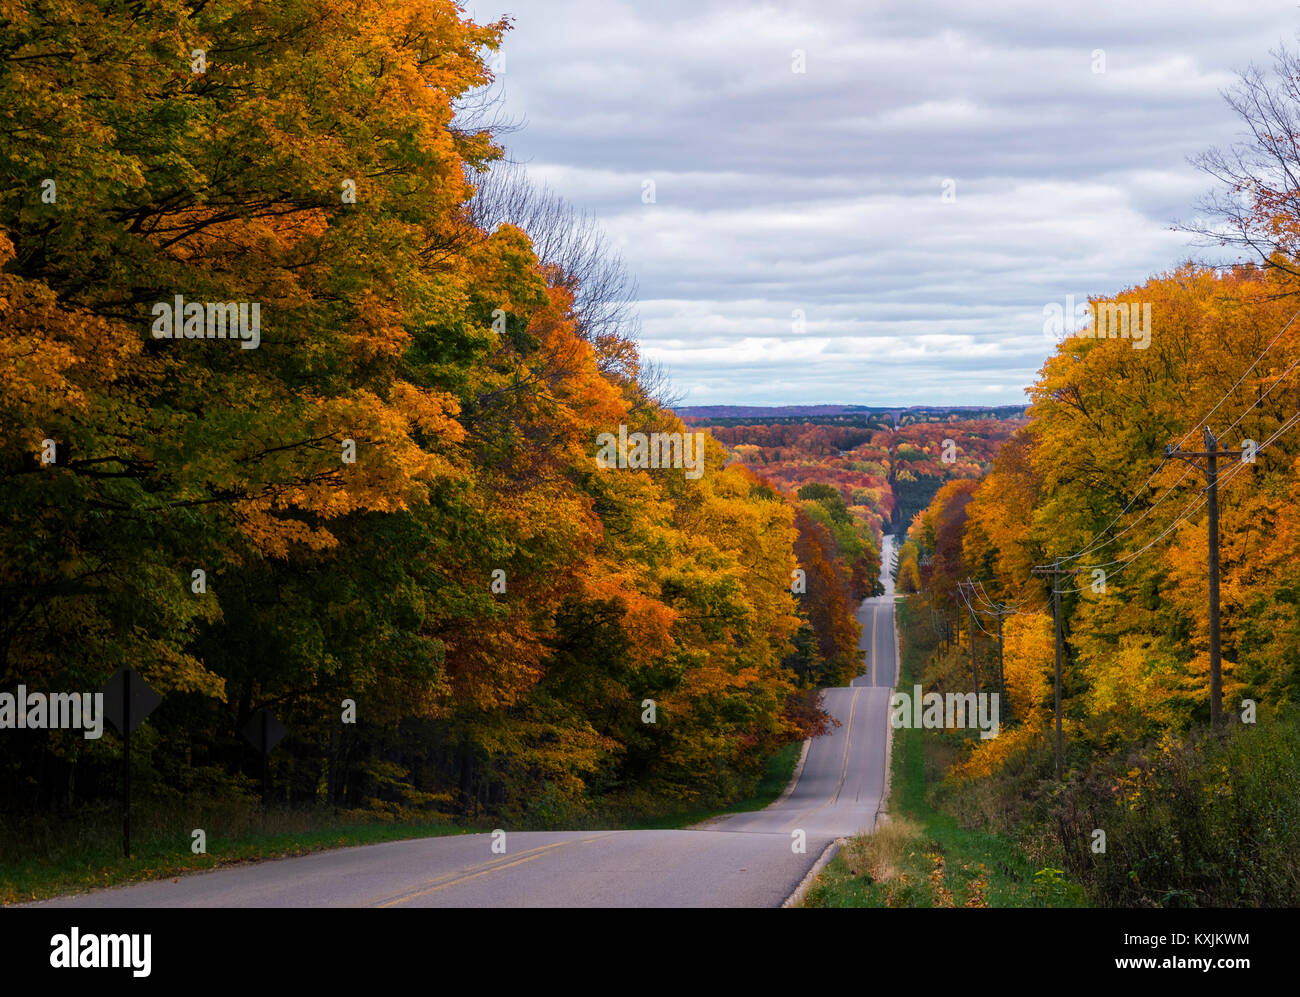 Route bordée d'arbres, Automne, Harbor Springs, Michigan, United States, Amérique du Nord Banque D'Images